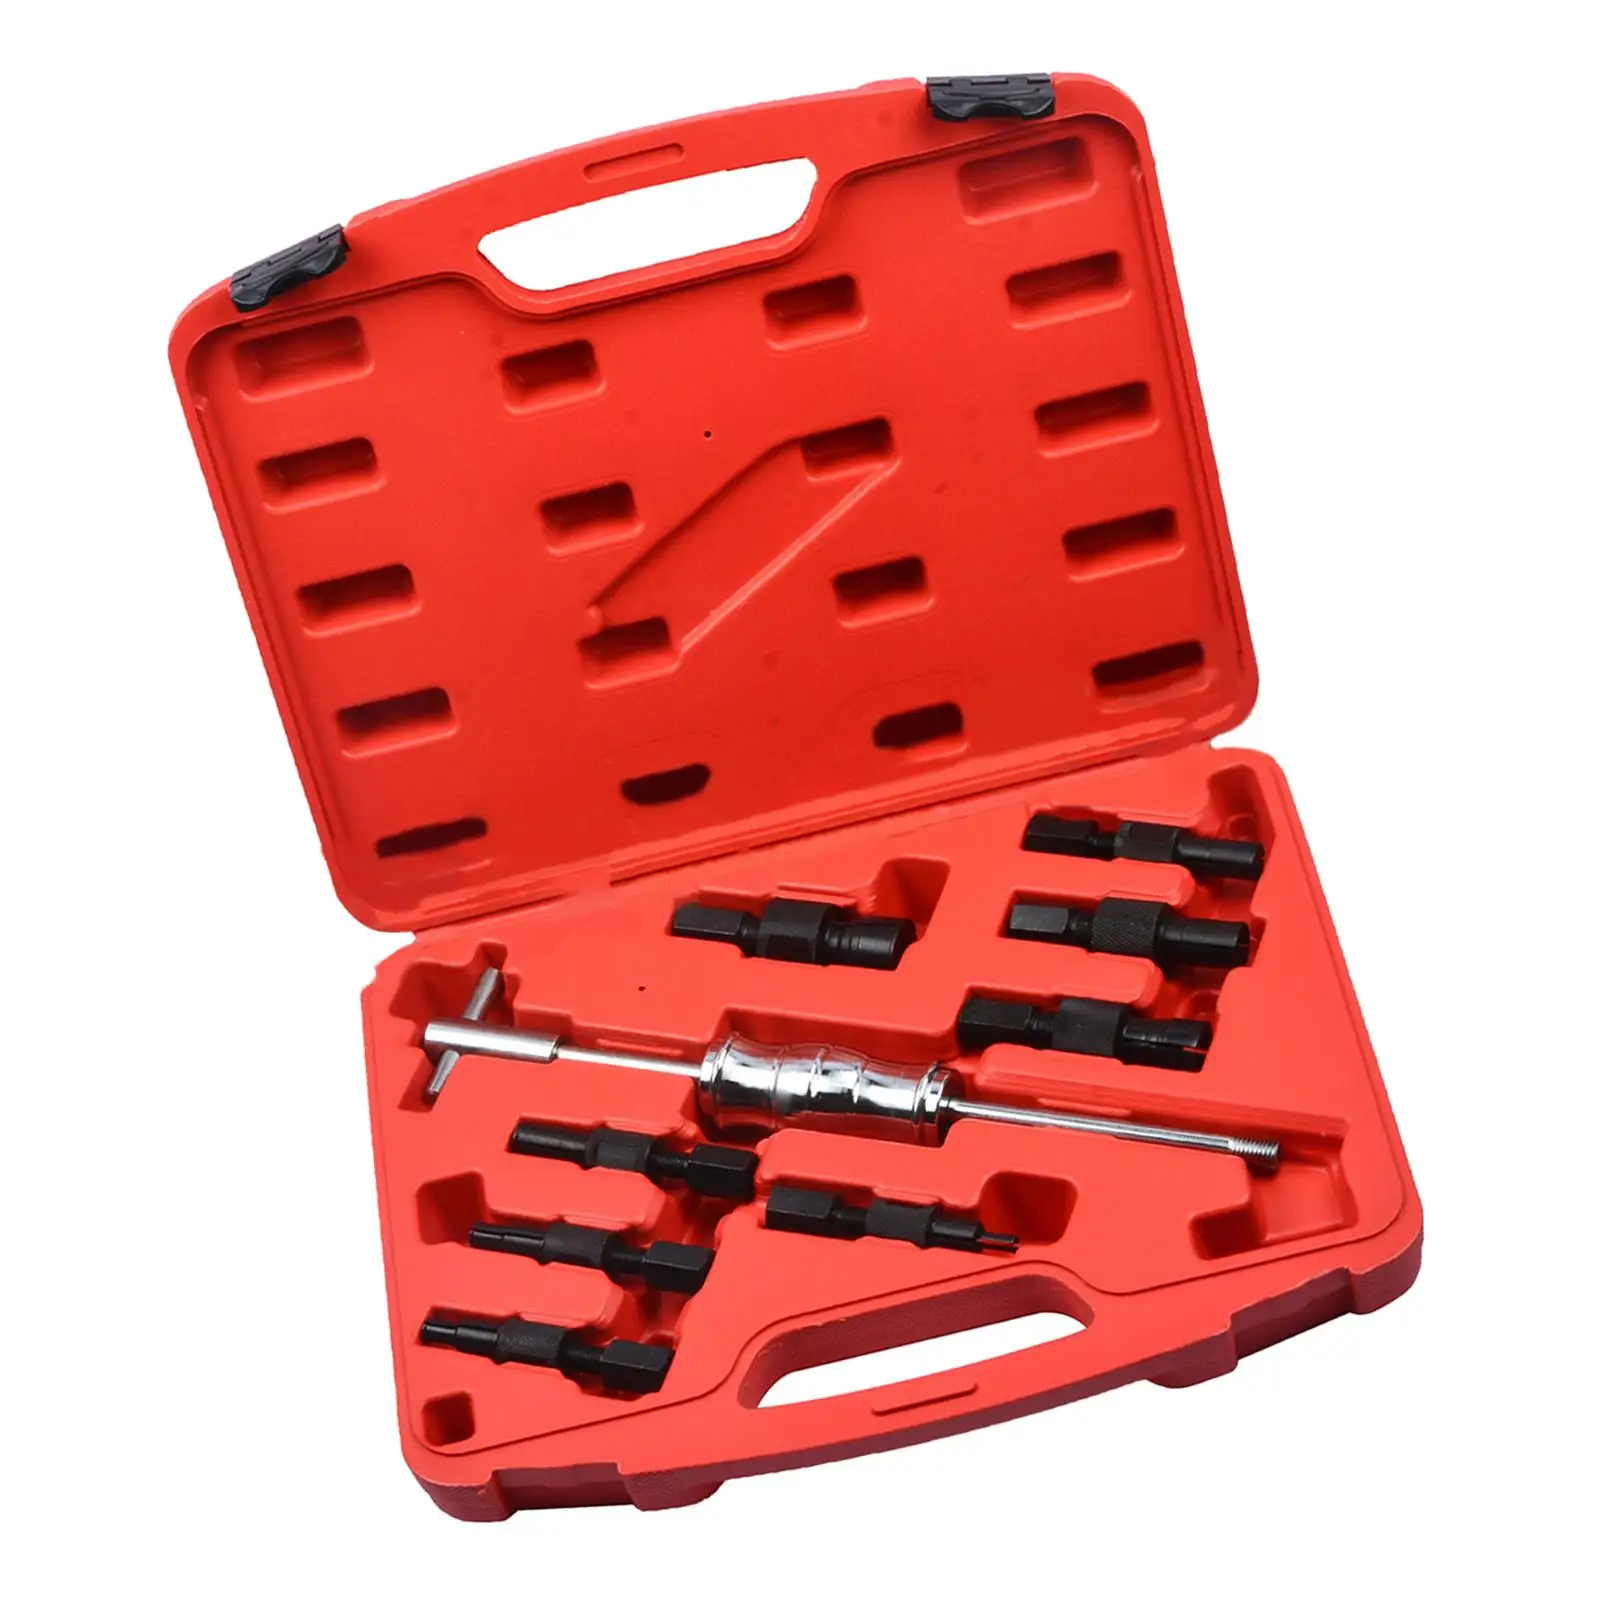 Inner Bearing Puller Set 9PC Easy to Use Wheel Bearing Removal Kit Slide Hammer Puller Set Bearing Puller Fits for Pulling Jobs